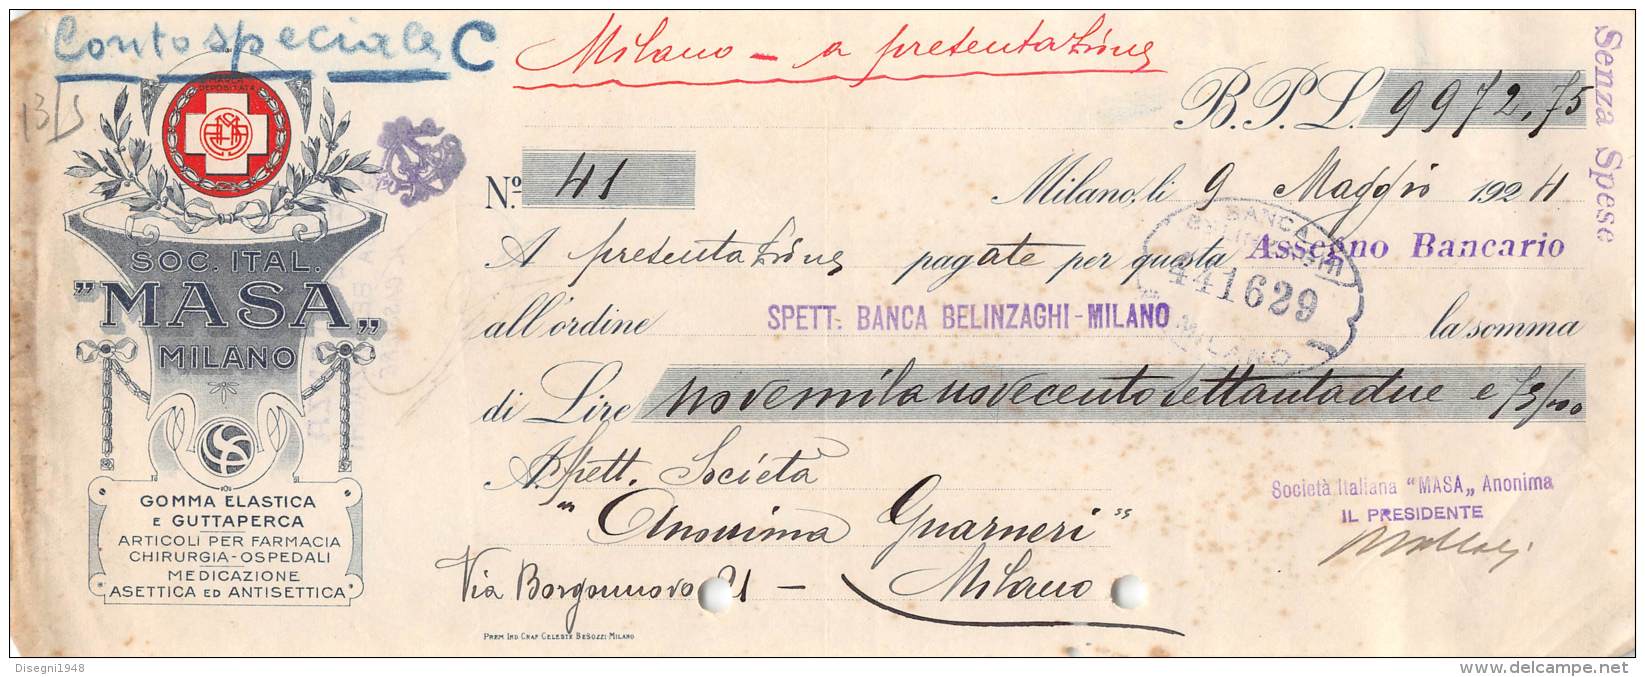 06250  "SOCIETA' ITALIANA MASA - MILANO - ASSEGNO BANCARIO - 1924" ORIGINALE - Assegni & Assegni Di Viaggio